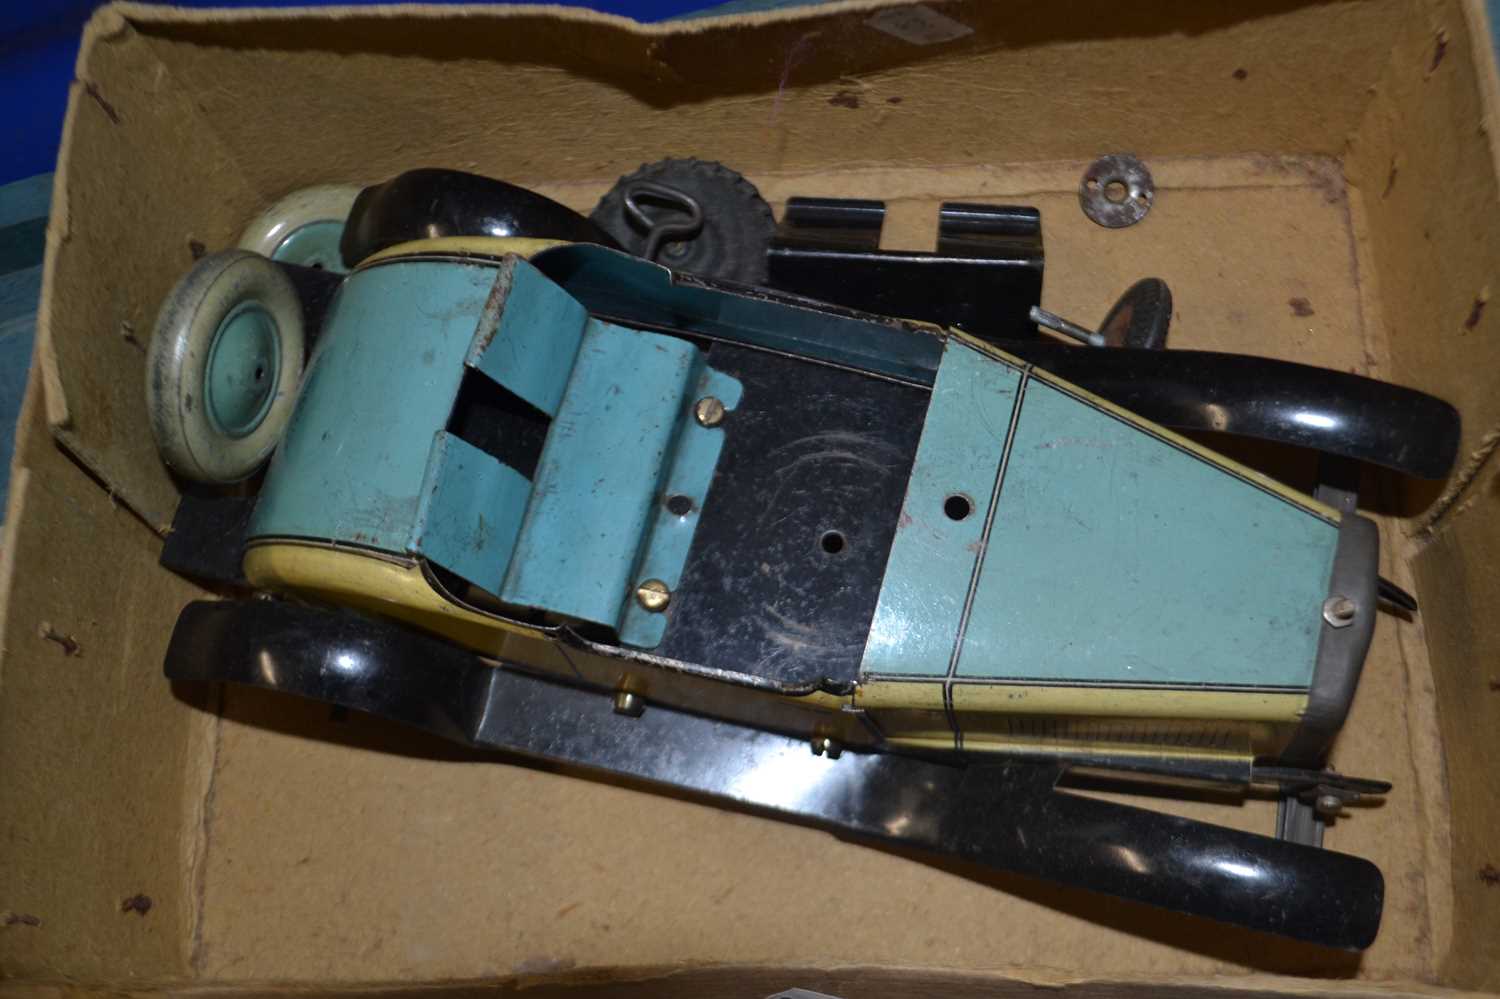 Metal clockwork toy car for restoration